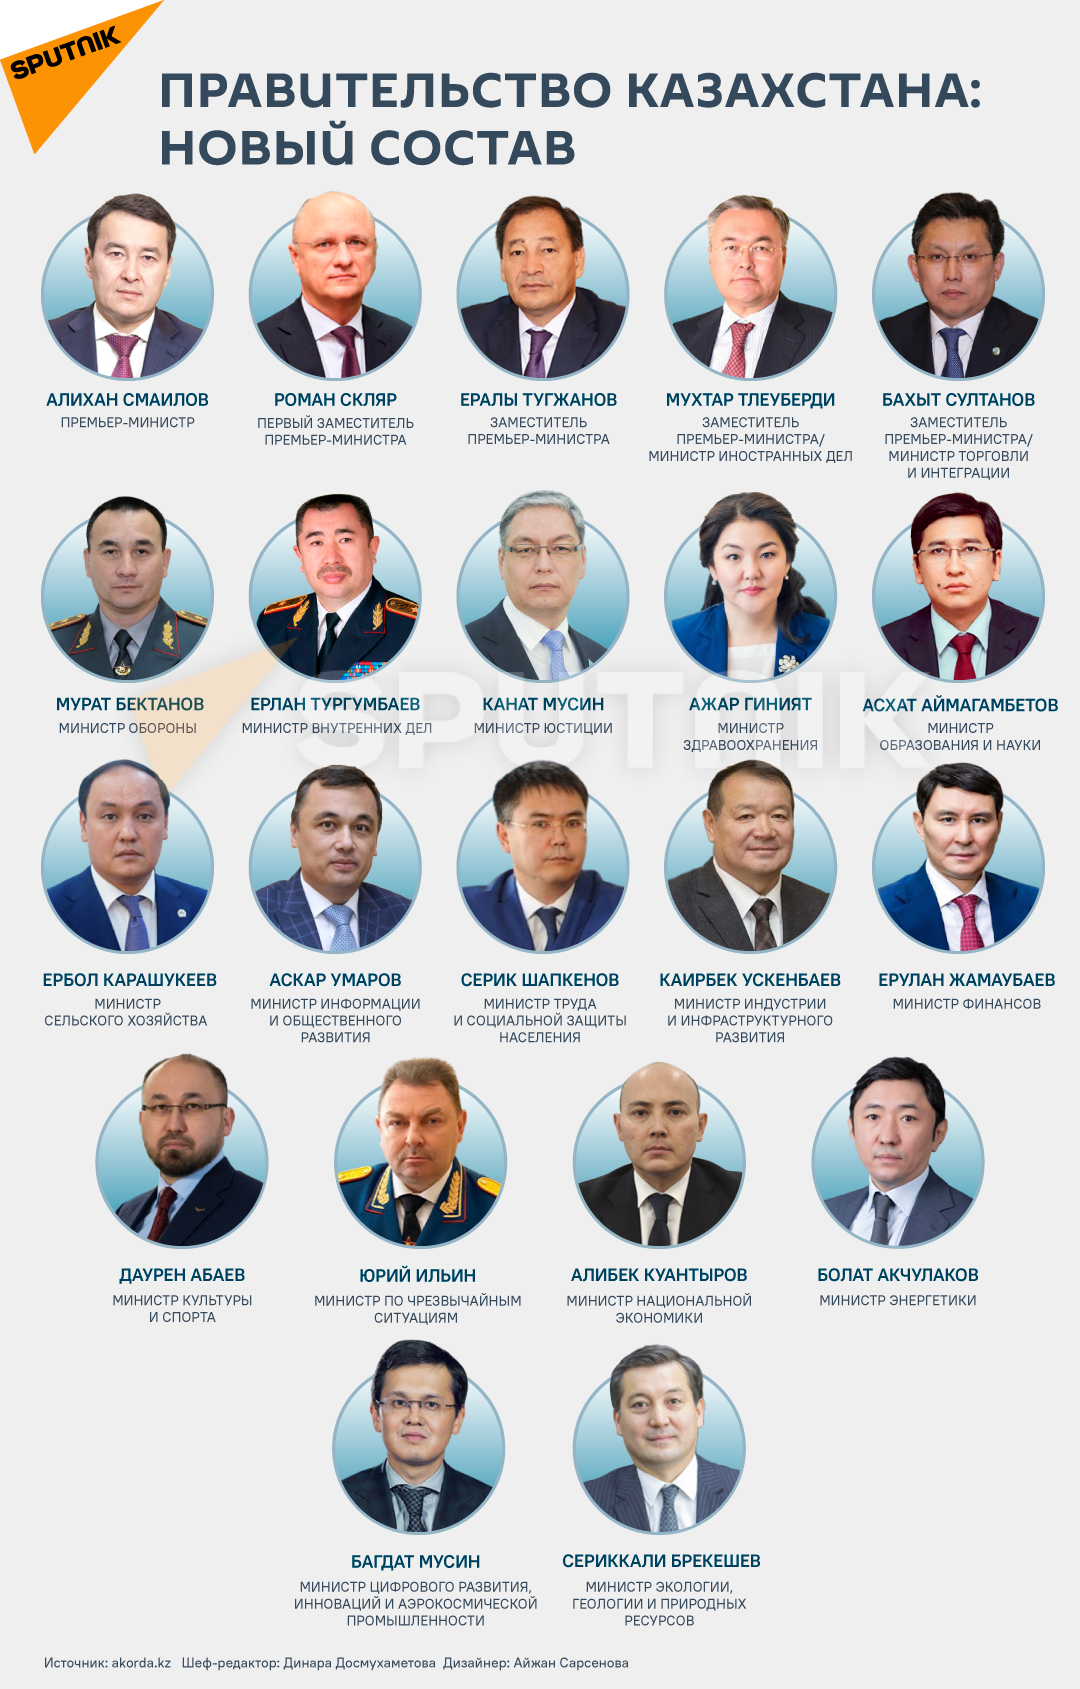 Правительство Казахстана - новый состав